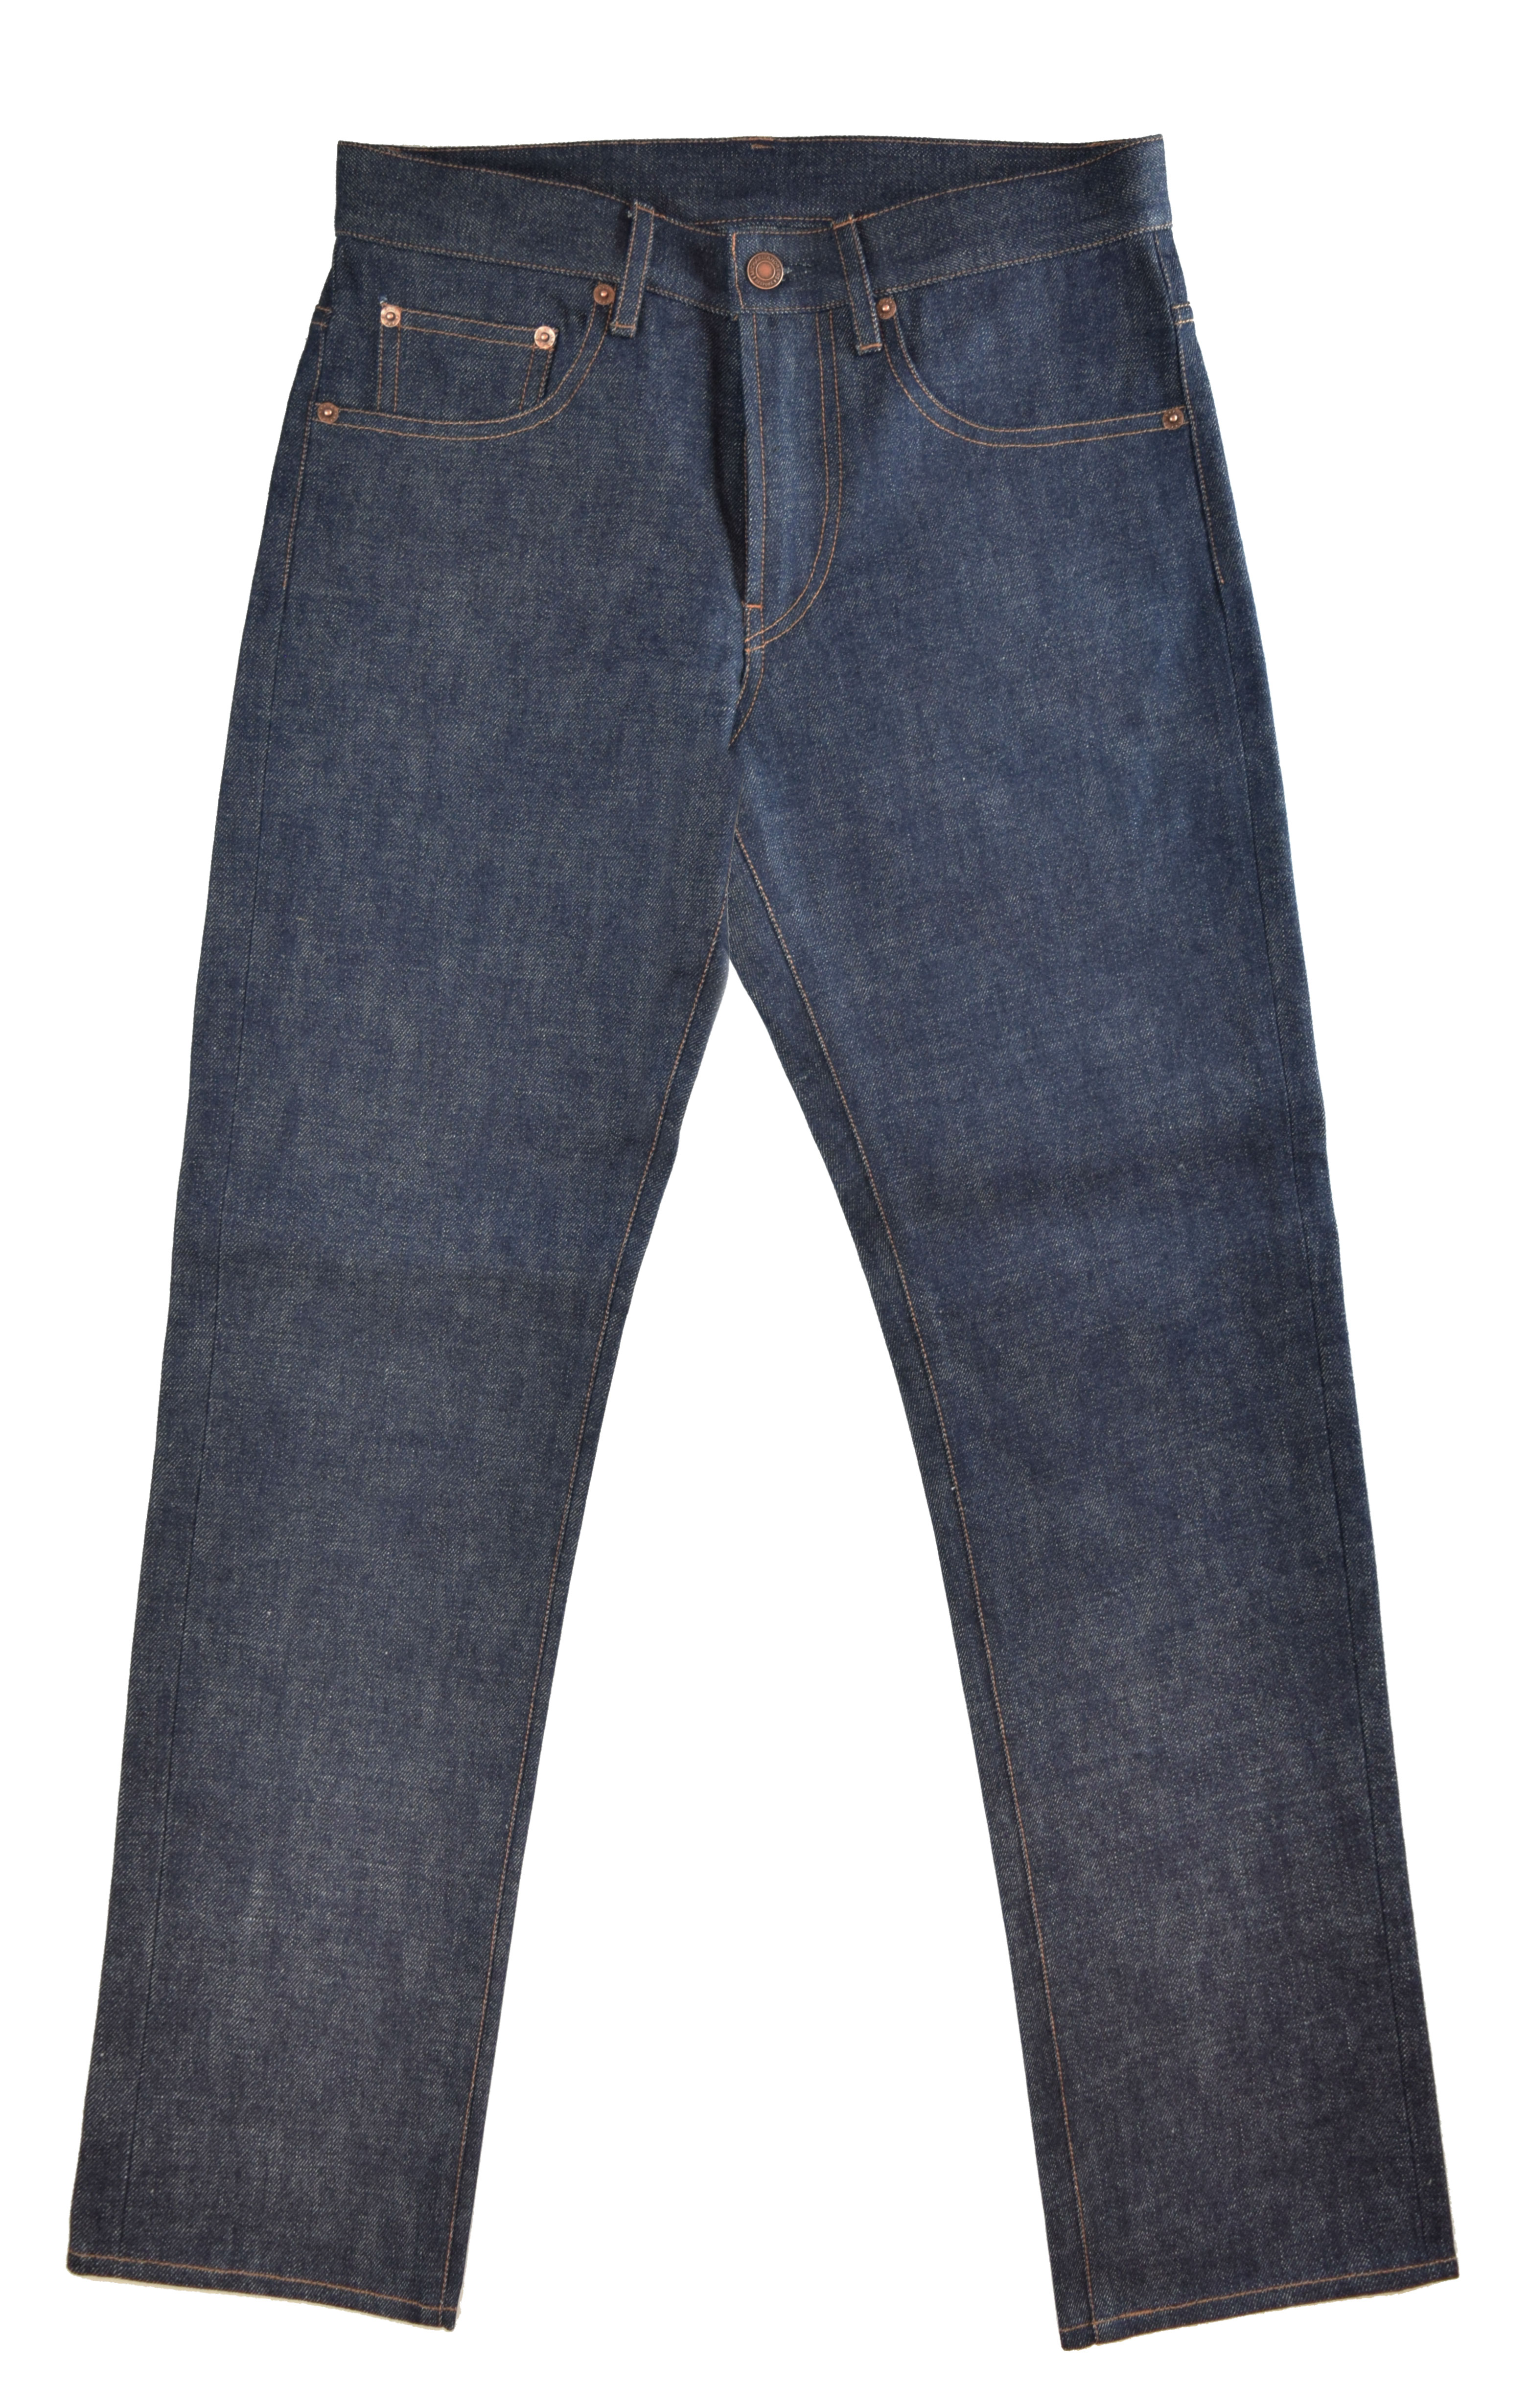 Custom Jeans from Michael Andrews Bespoke